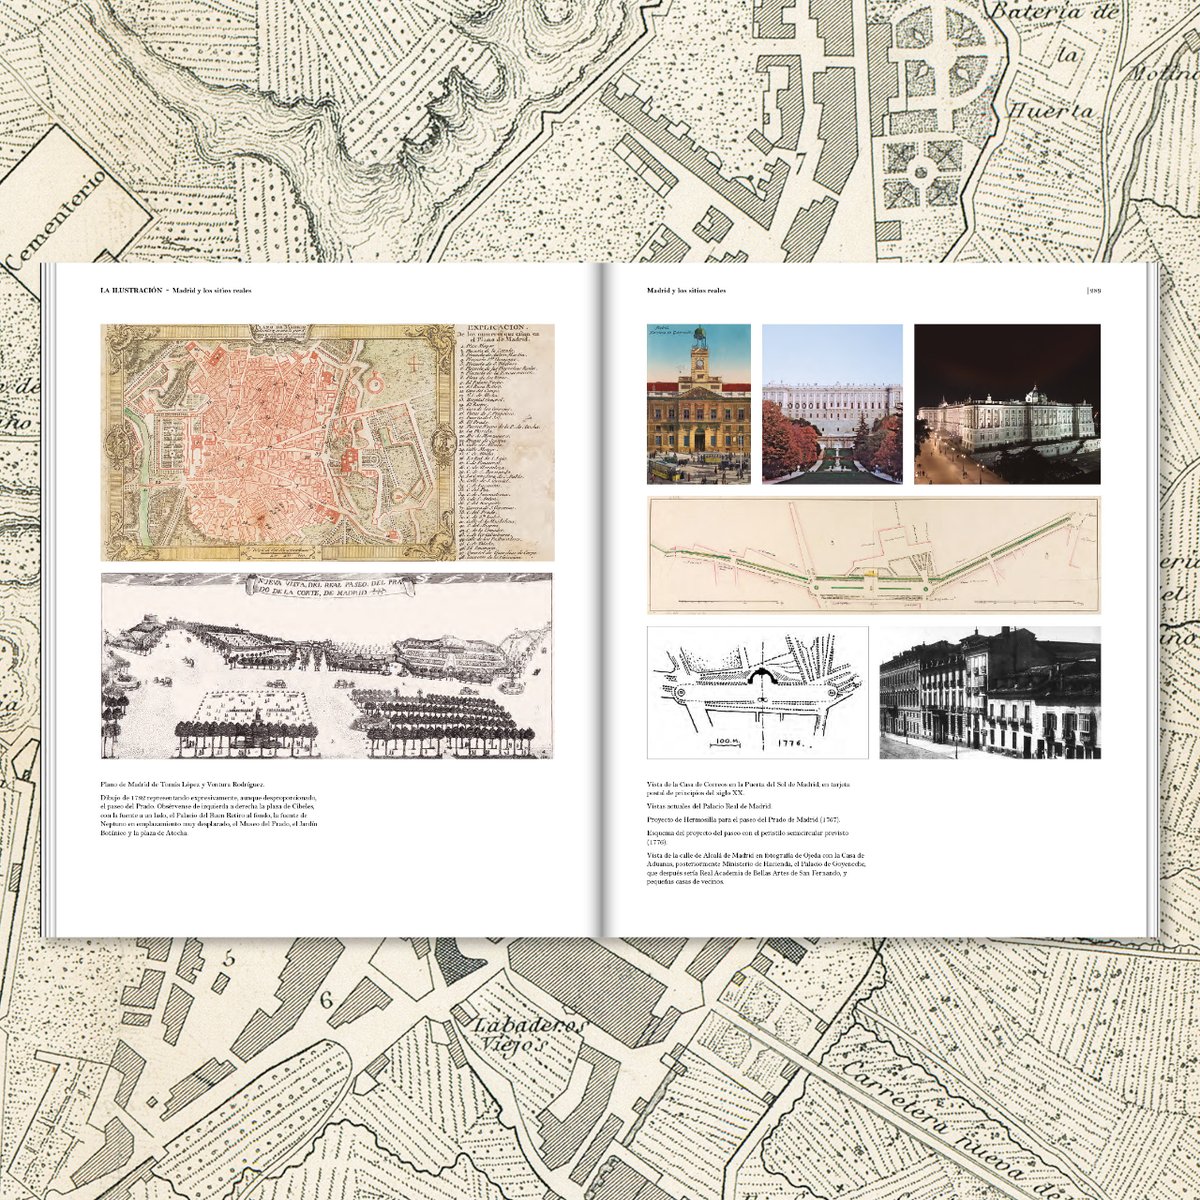 📣📙 NOVEDAD EDITORIAL. “Atlas histórico del urbanismo español” Fernando de Terán — arquia/otras colecciones.  🔗Ya disponible en nuestra web y en librerías fundacion.arquia.com/ediciones/publ…